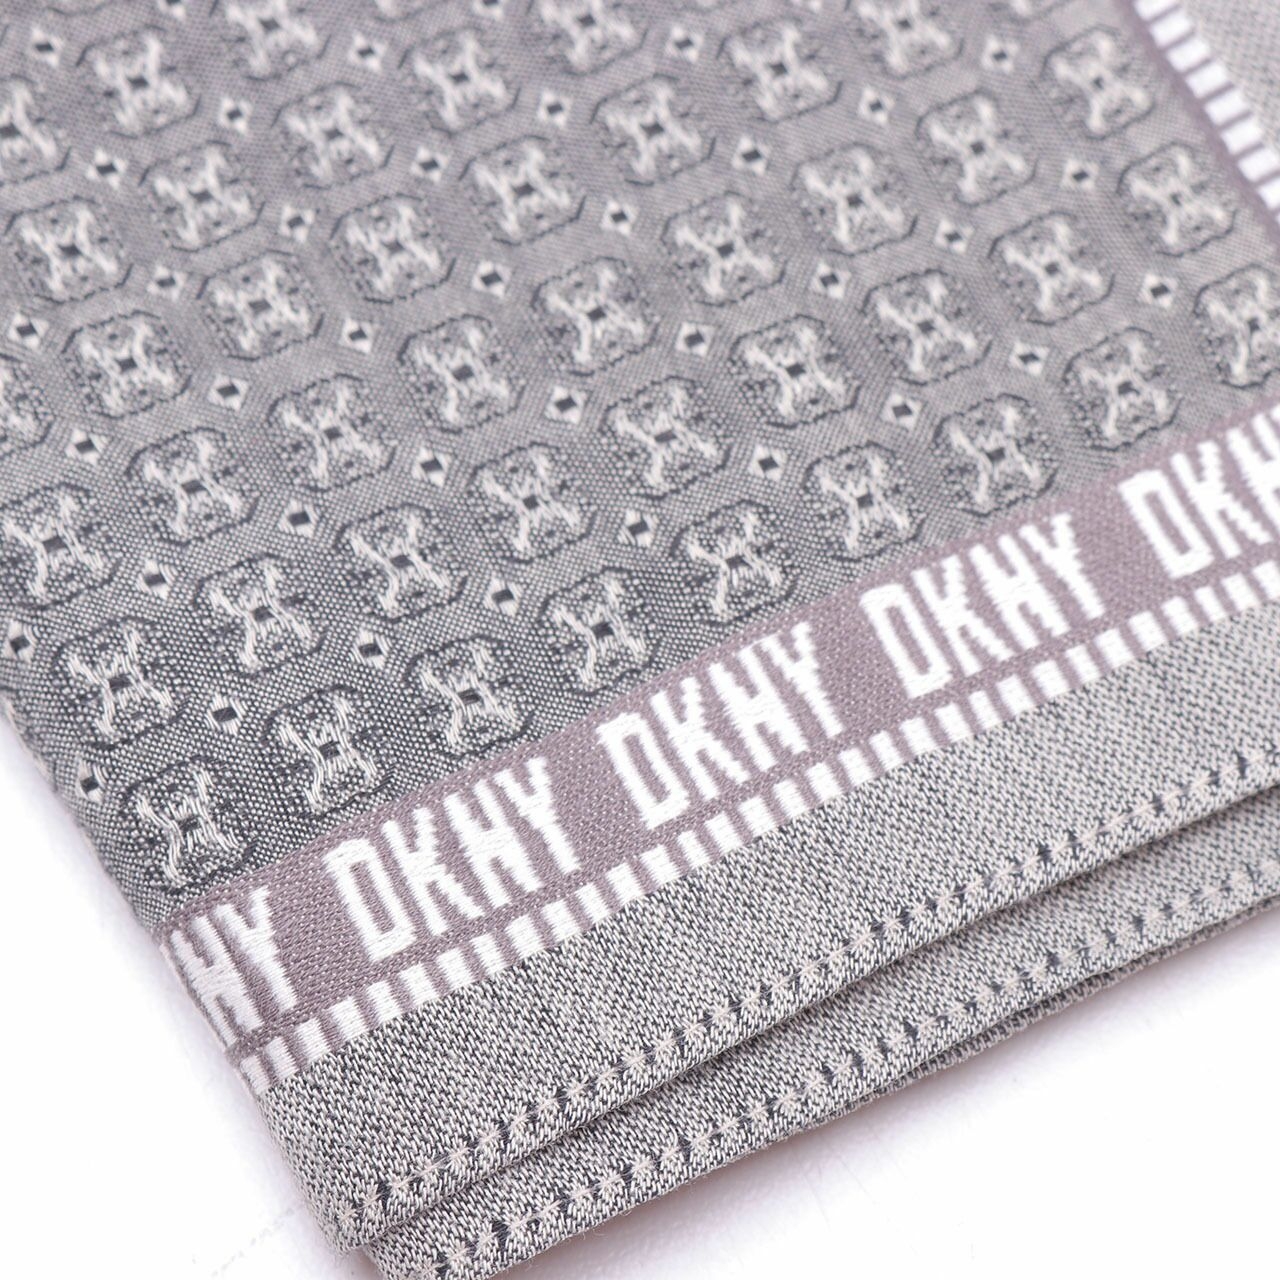 DKNY Olive Pattern Scarf